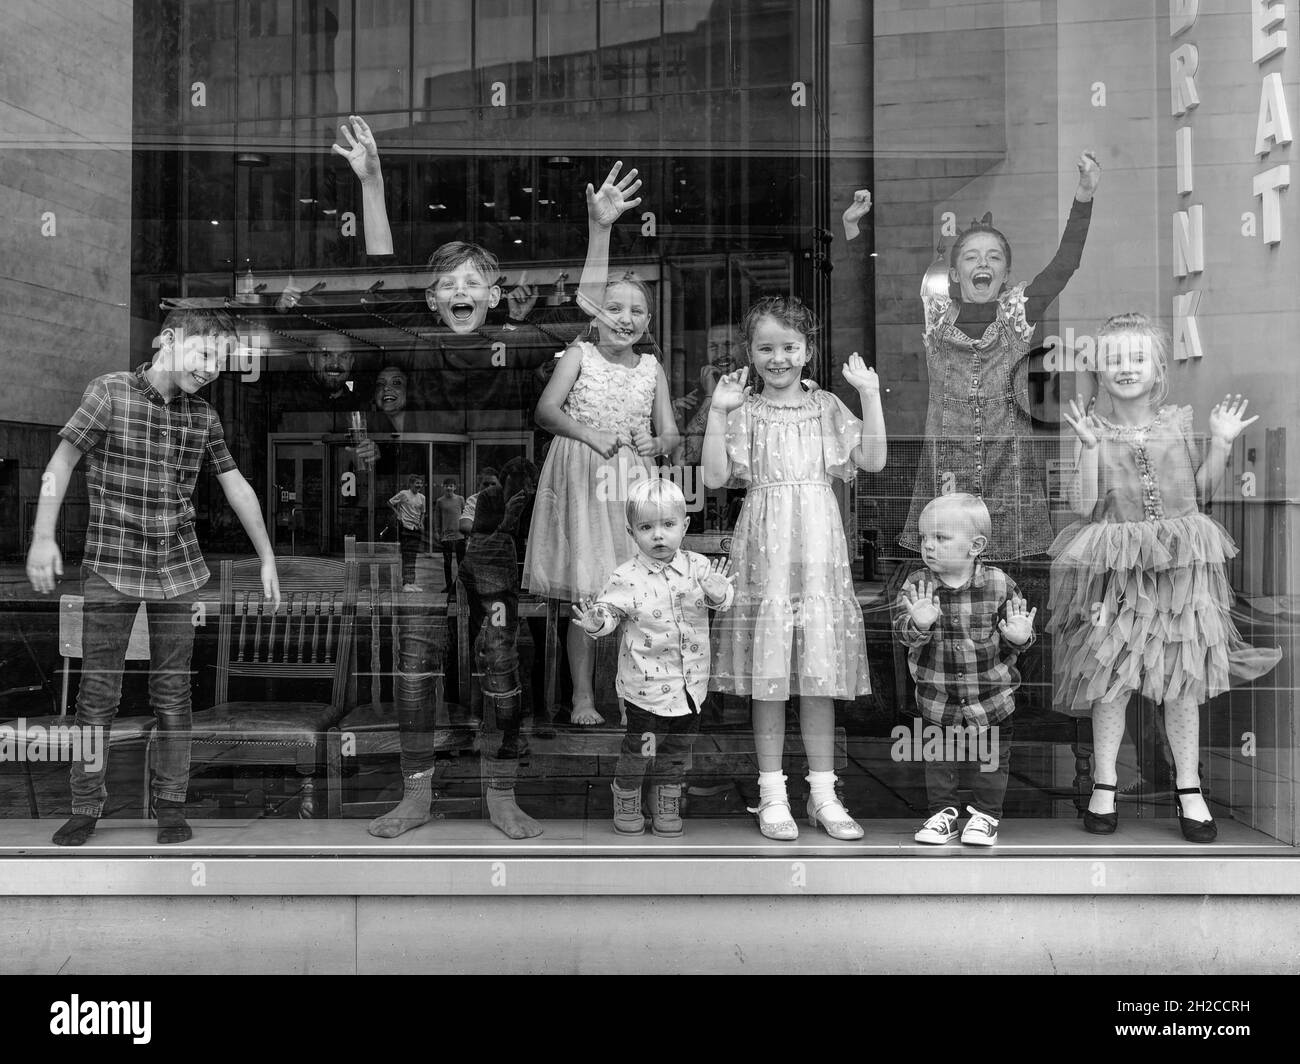 London, Greater London, England, Oktober 09 2021: Eine Gruppe von Kindern lächelt hinter einem Fenster, winkt und tanzt mit einem Roboter. Monochromes Bild. Stockfoto